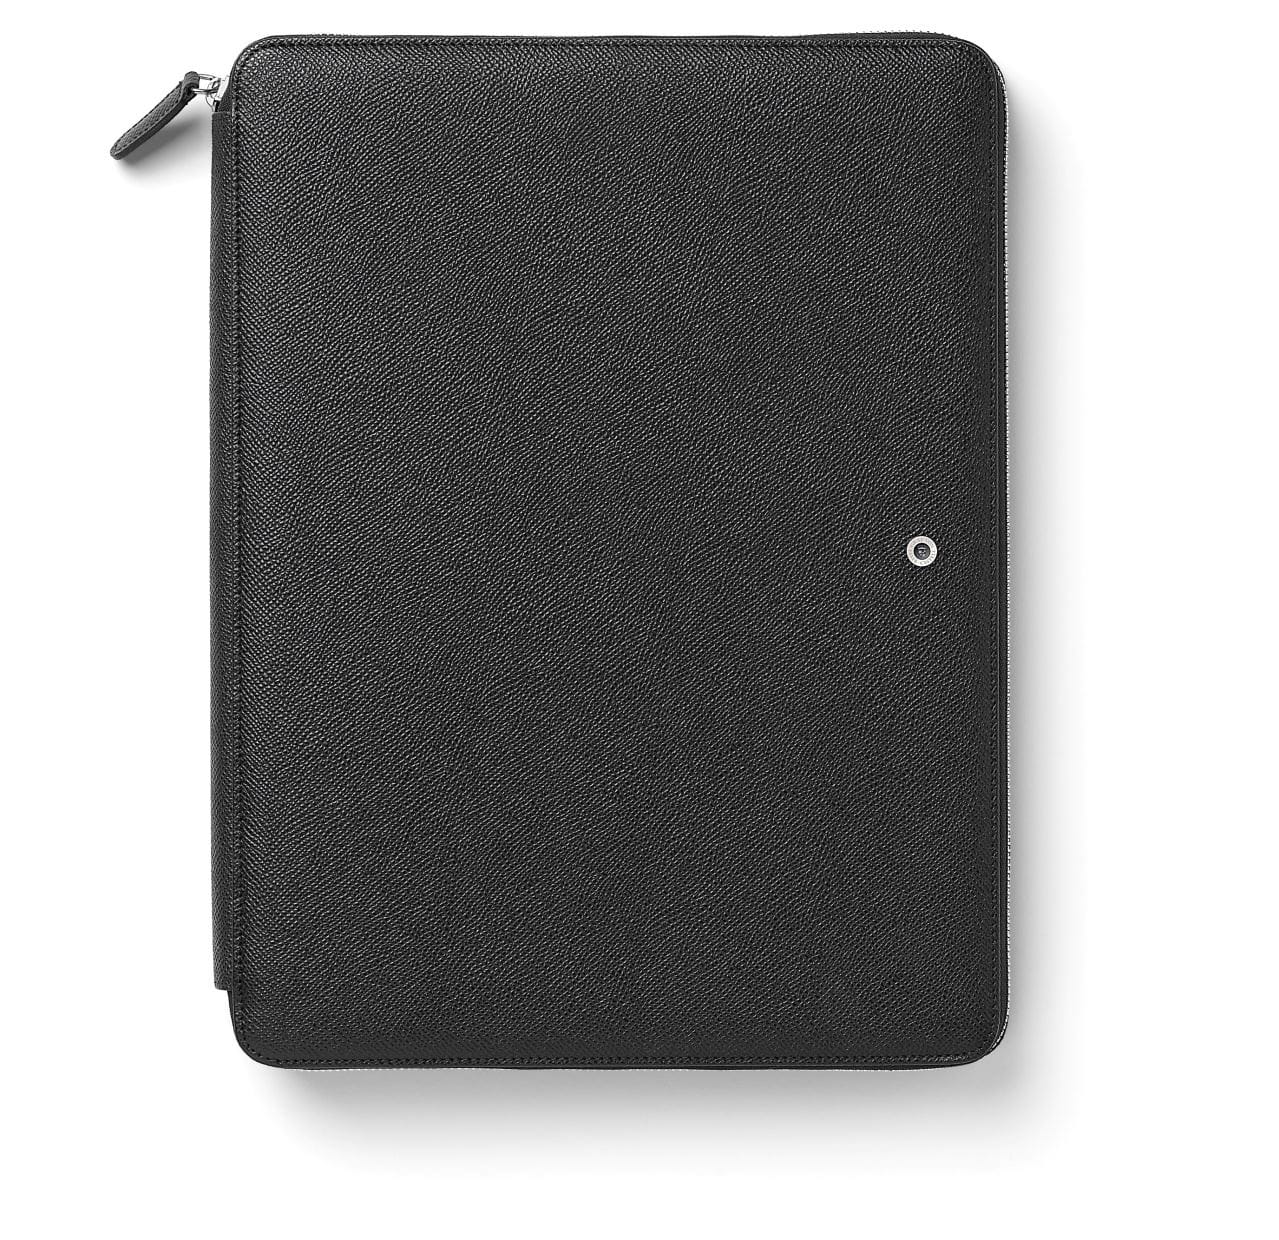 Graf-von-Faber-Castell - Bloco de notas com capa para tablet, tamanho A4 preto